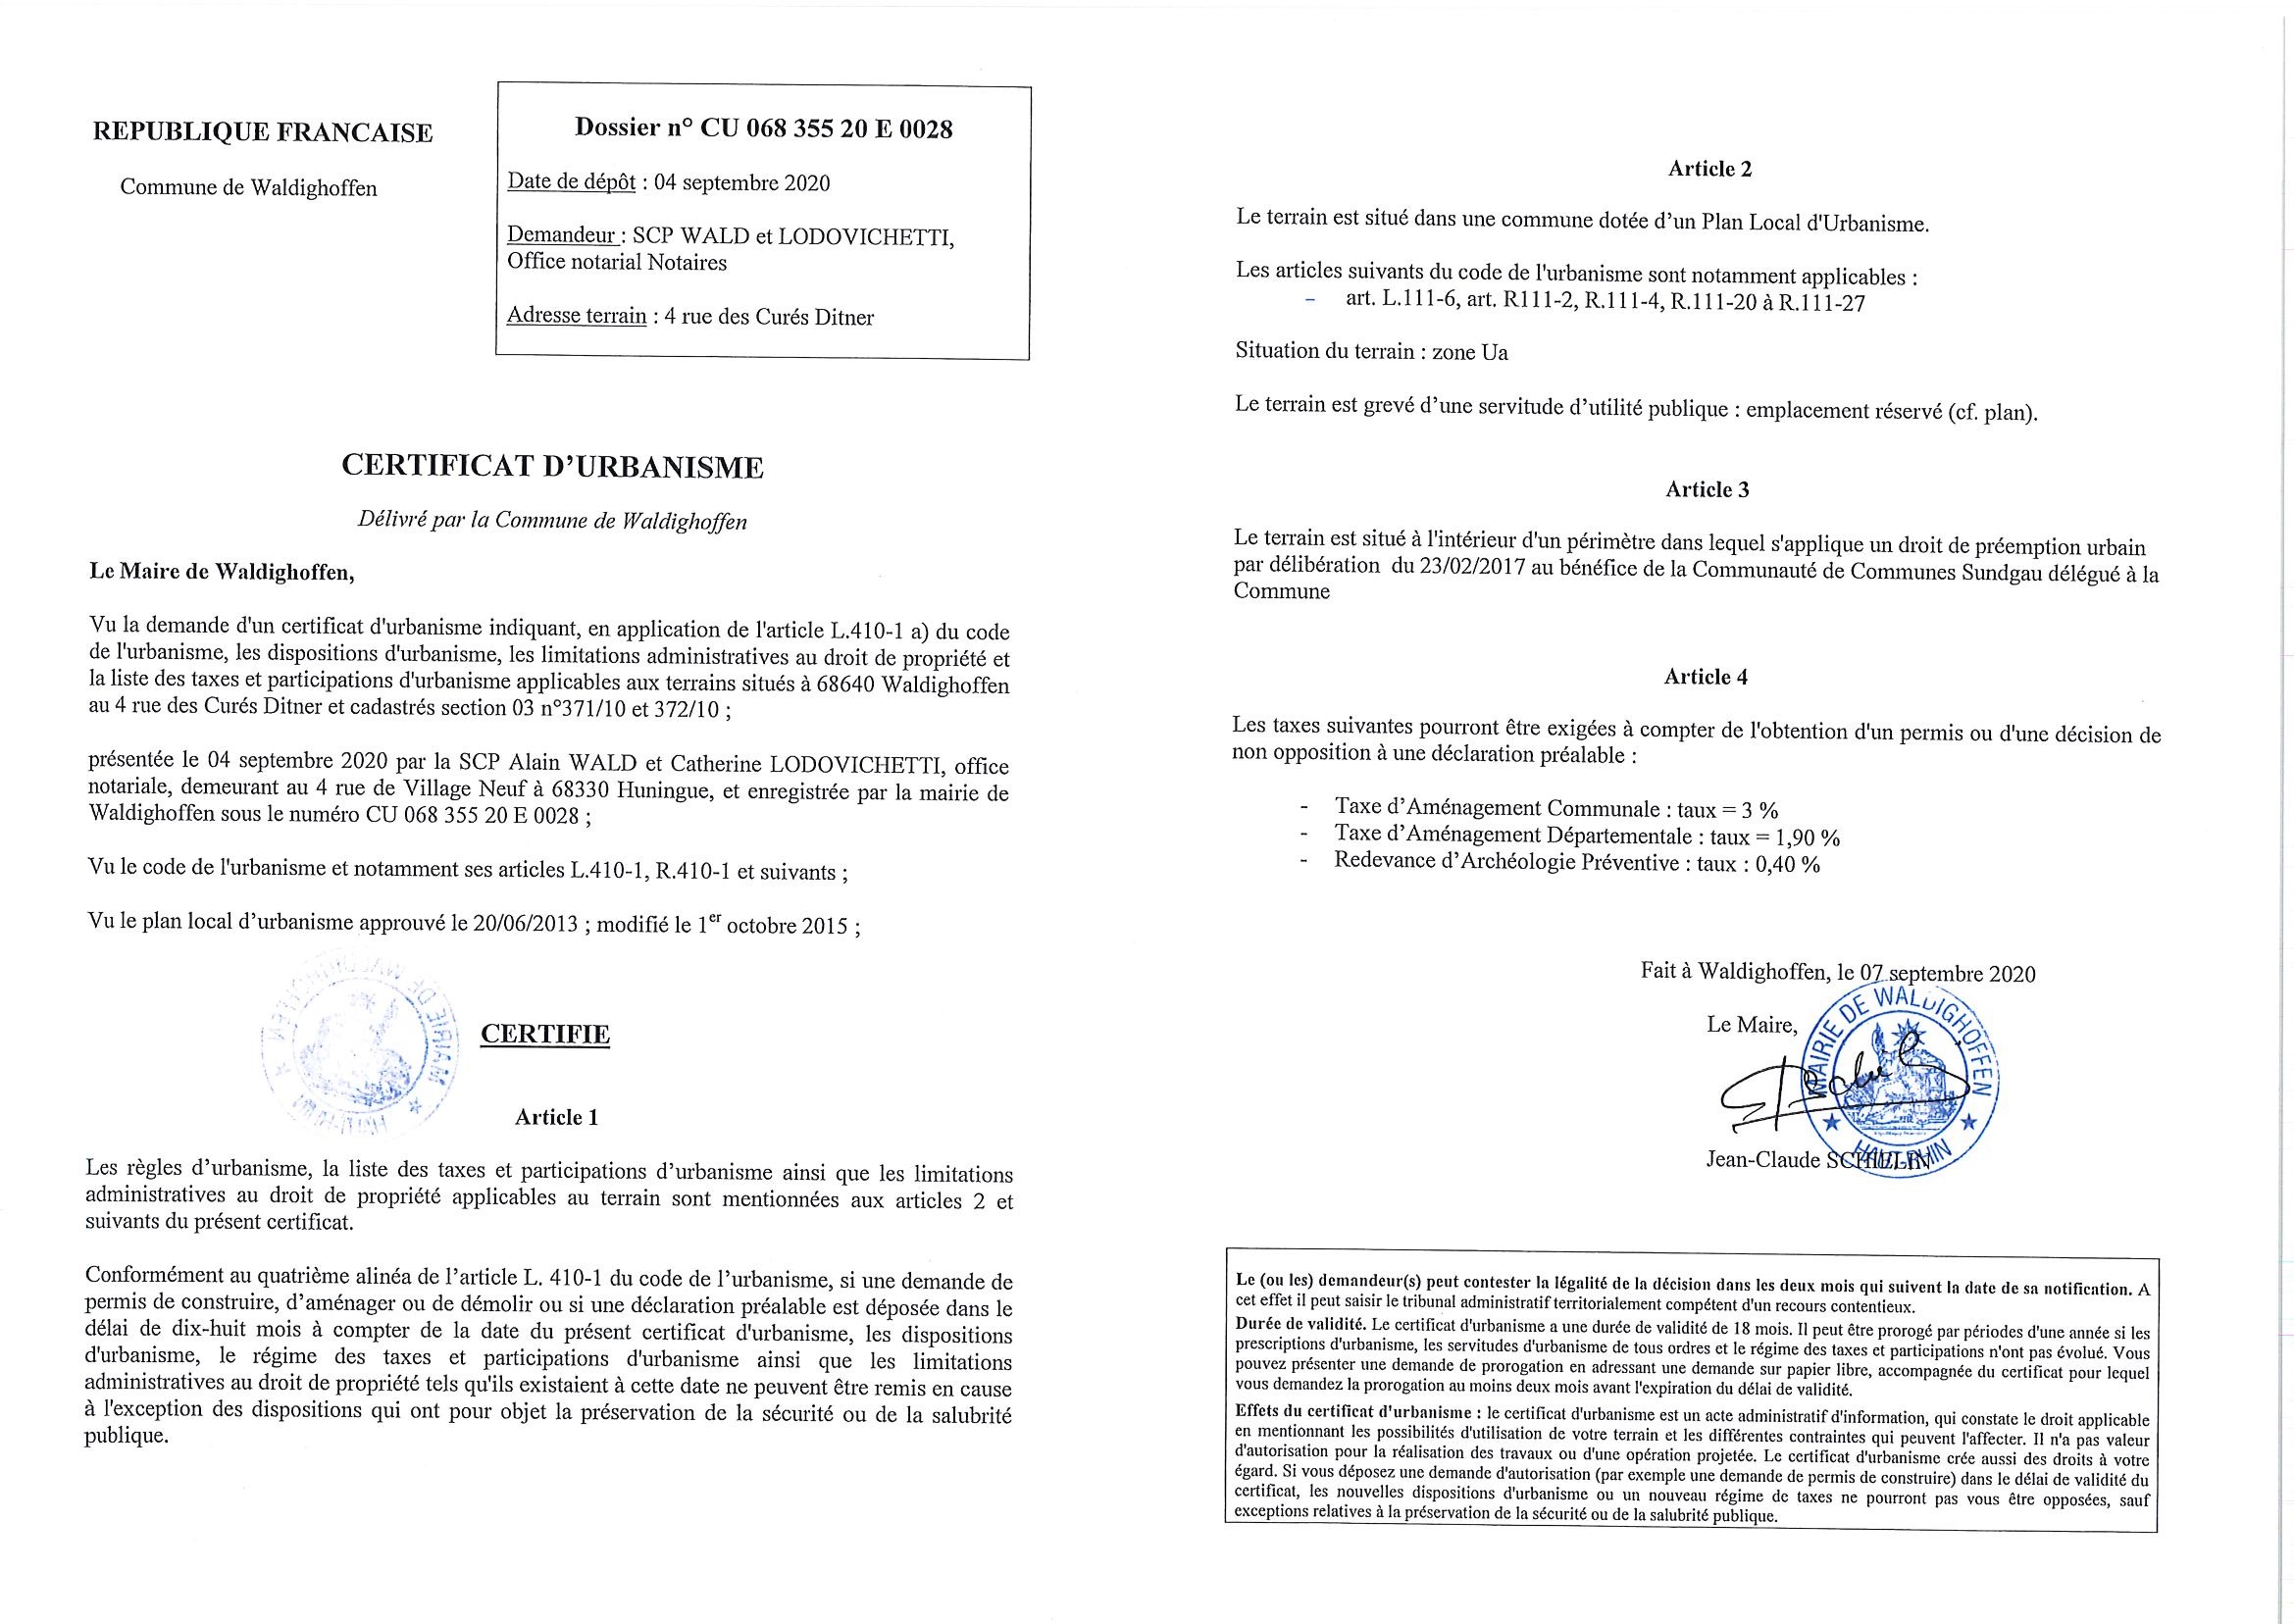 Certificat d'urbanisme établi pour la Scp Wald et Lodovichetti, Office notarial